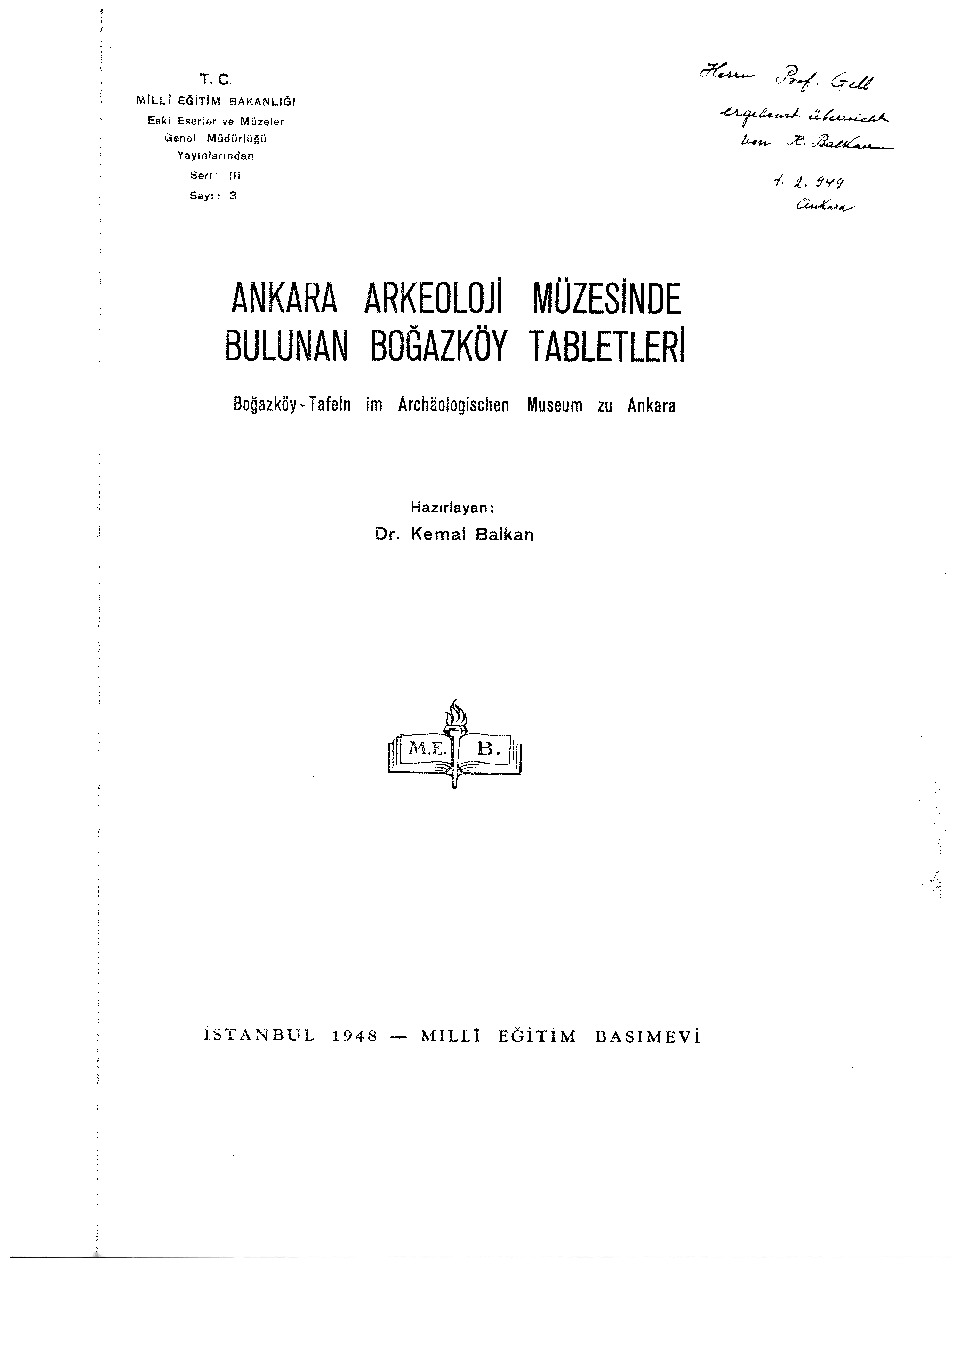 Ankara Arkeoloji Muzesinde Bulunan Boğazköy Tabletleri-Kemal Balkan-1948-44s